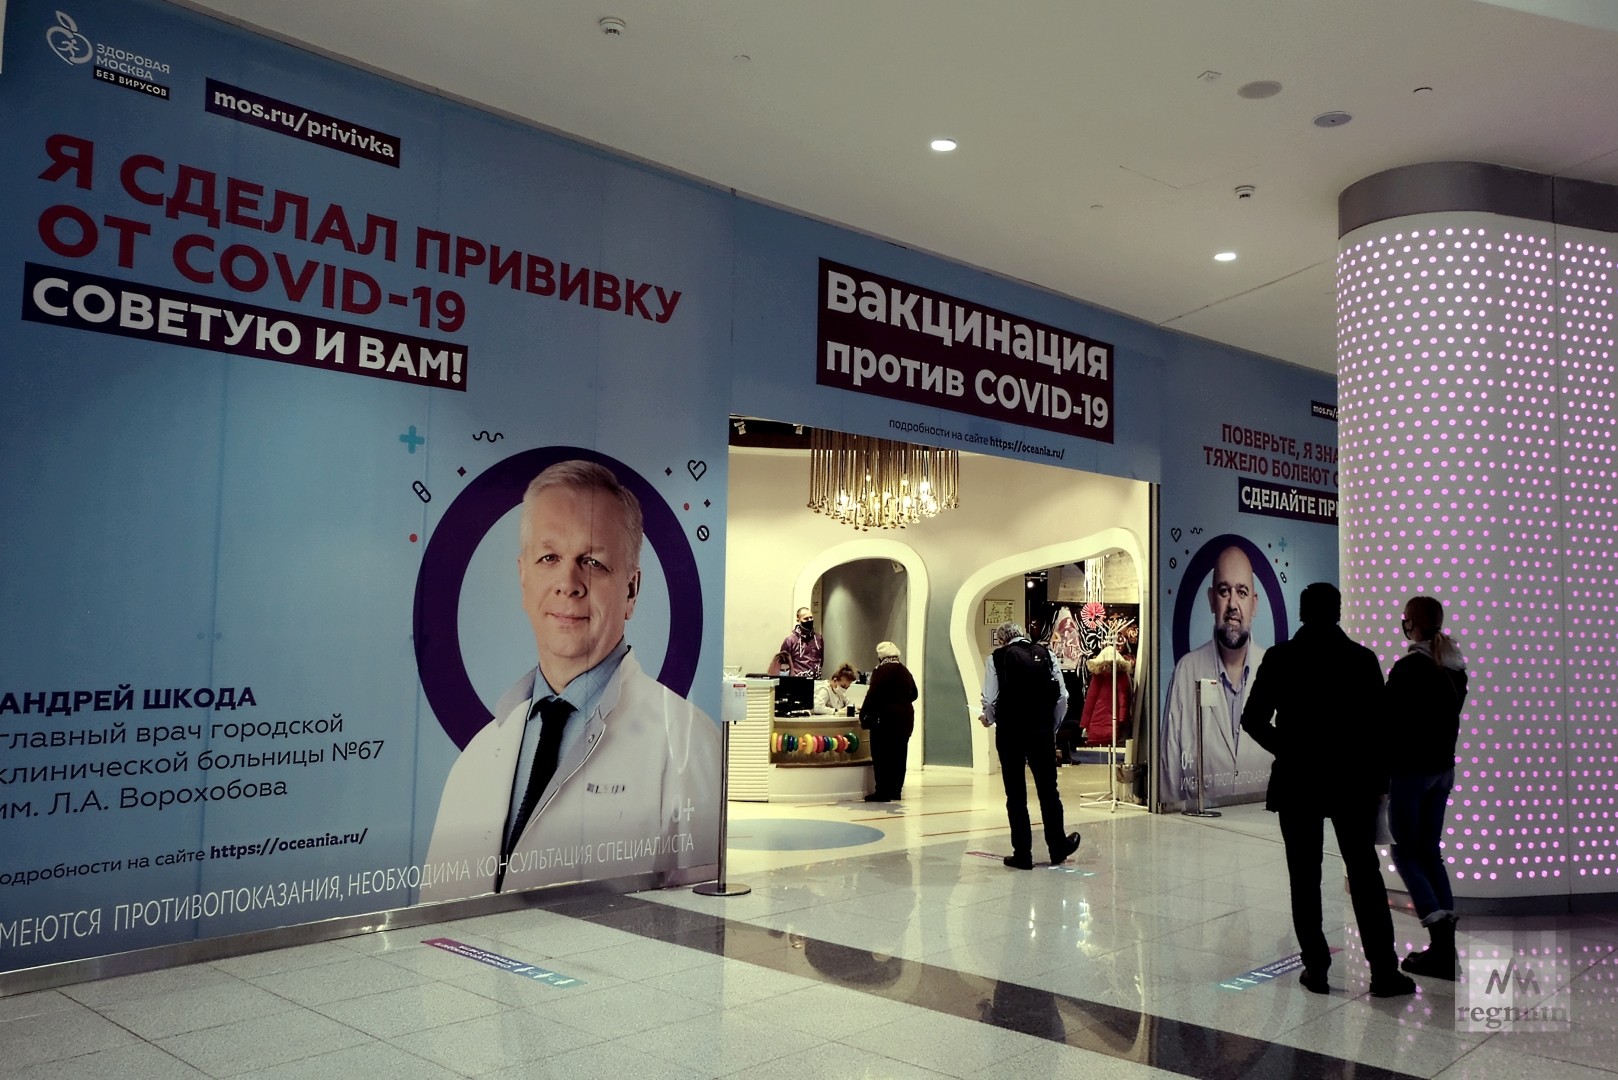 Где можно поставить прививку красноярск. Вакцинация в ТЦ. Пункты вакцинации в Москве. Пункт вакцинации в торговом центре. Пункты вакцинации в ТРЦ.